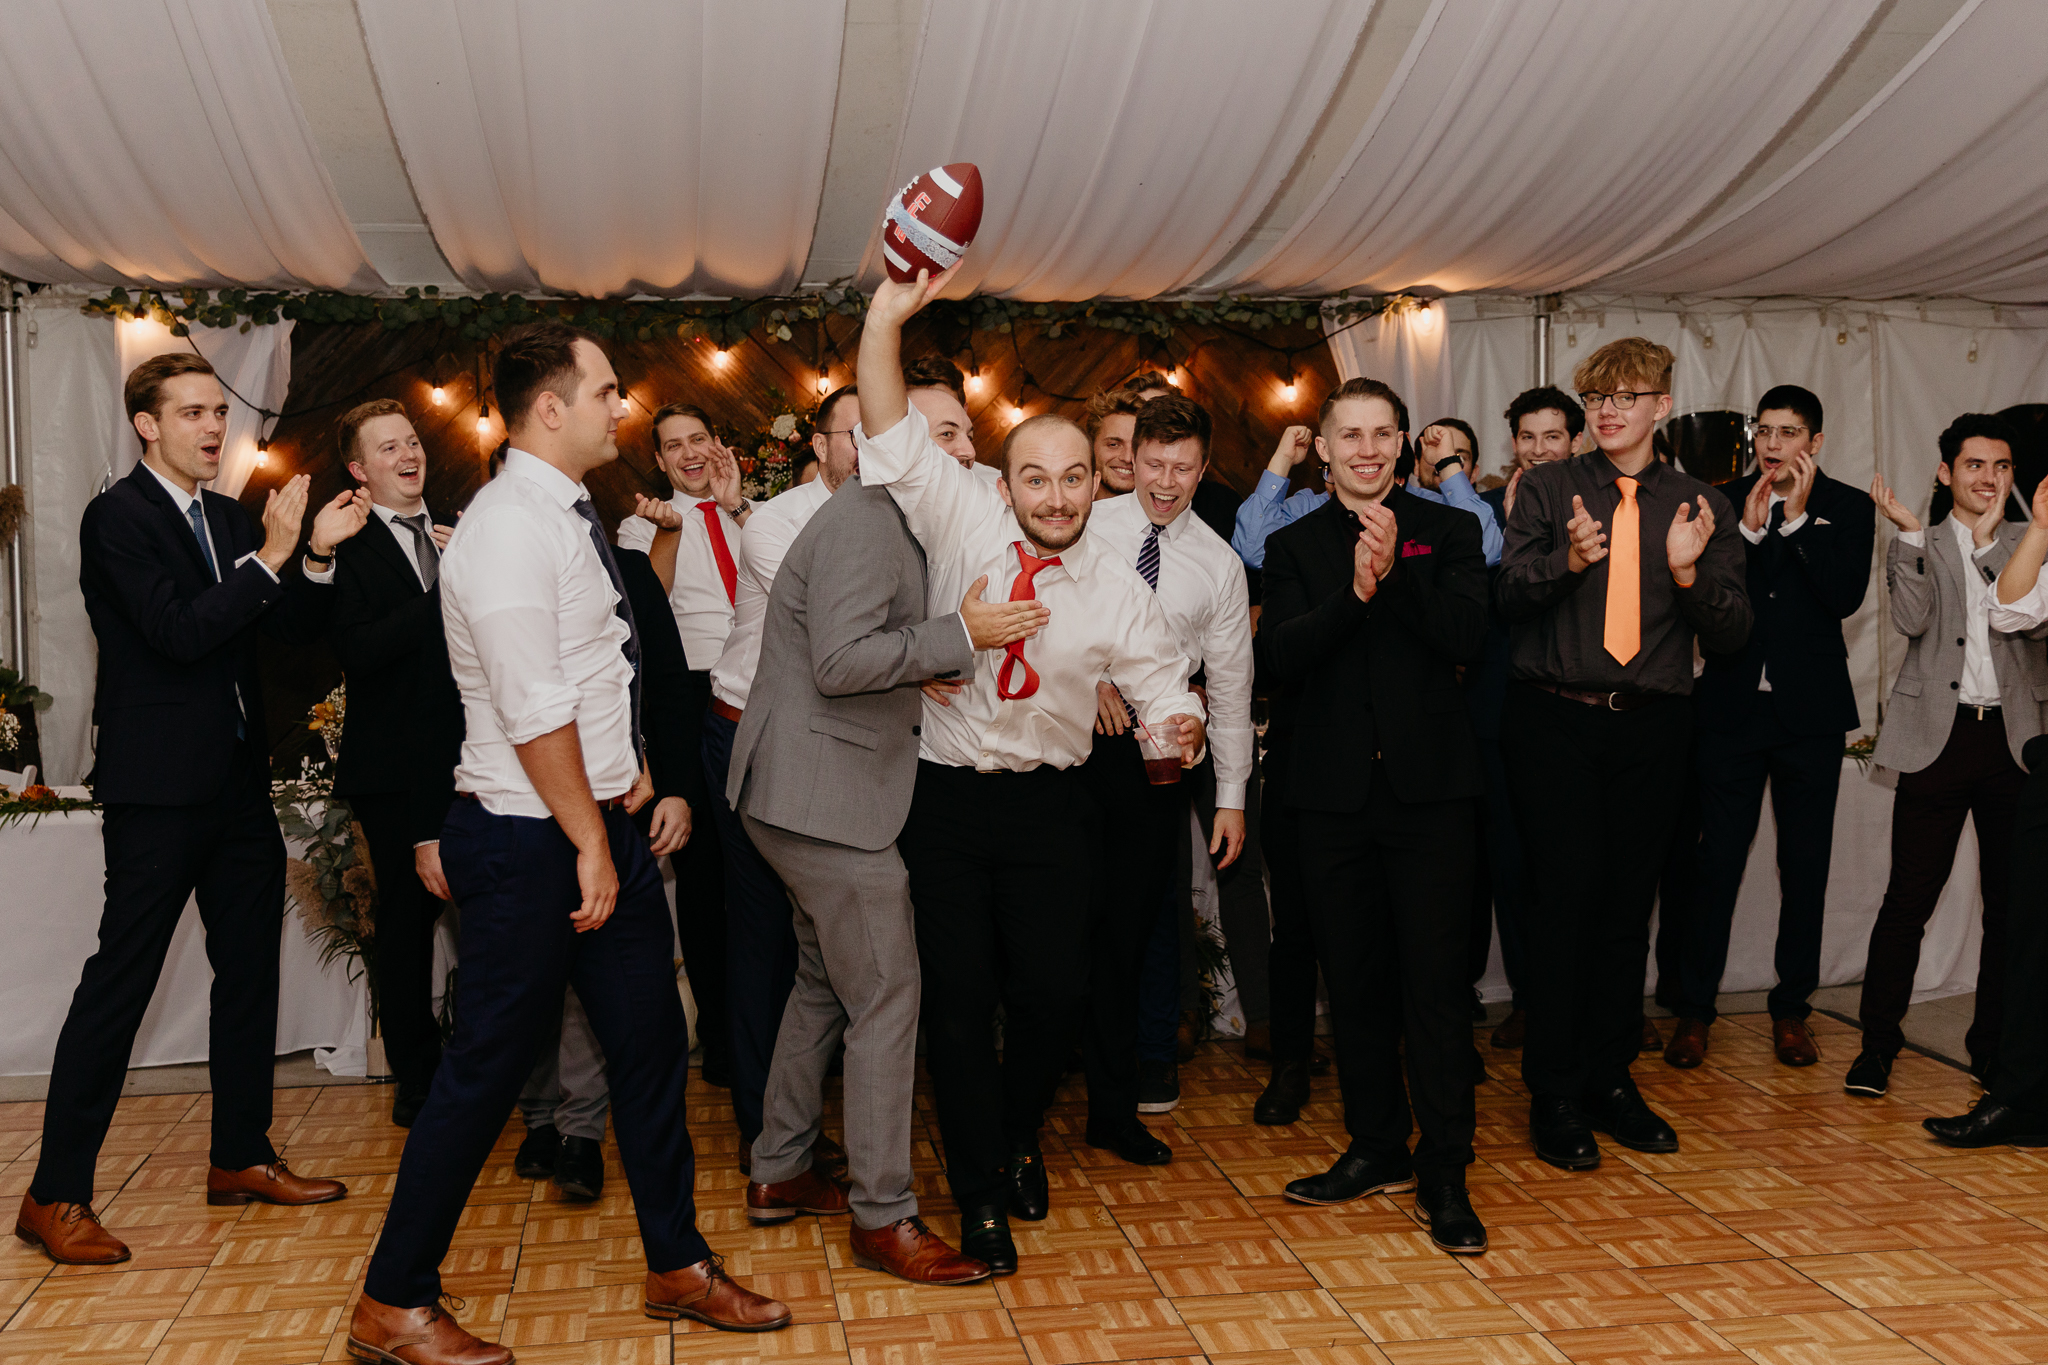 Groom tosses garter on football to all the single men on the dance floor